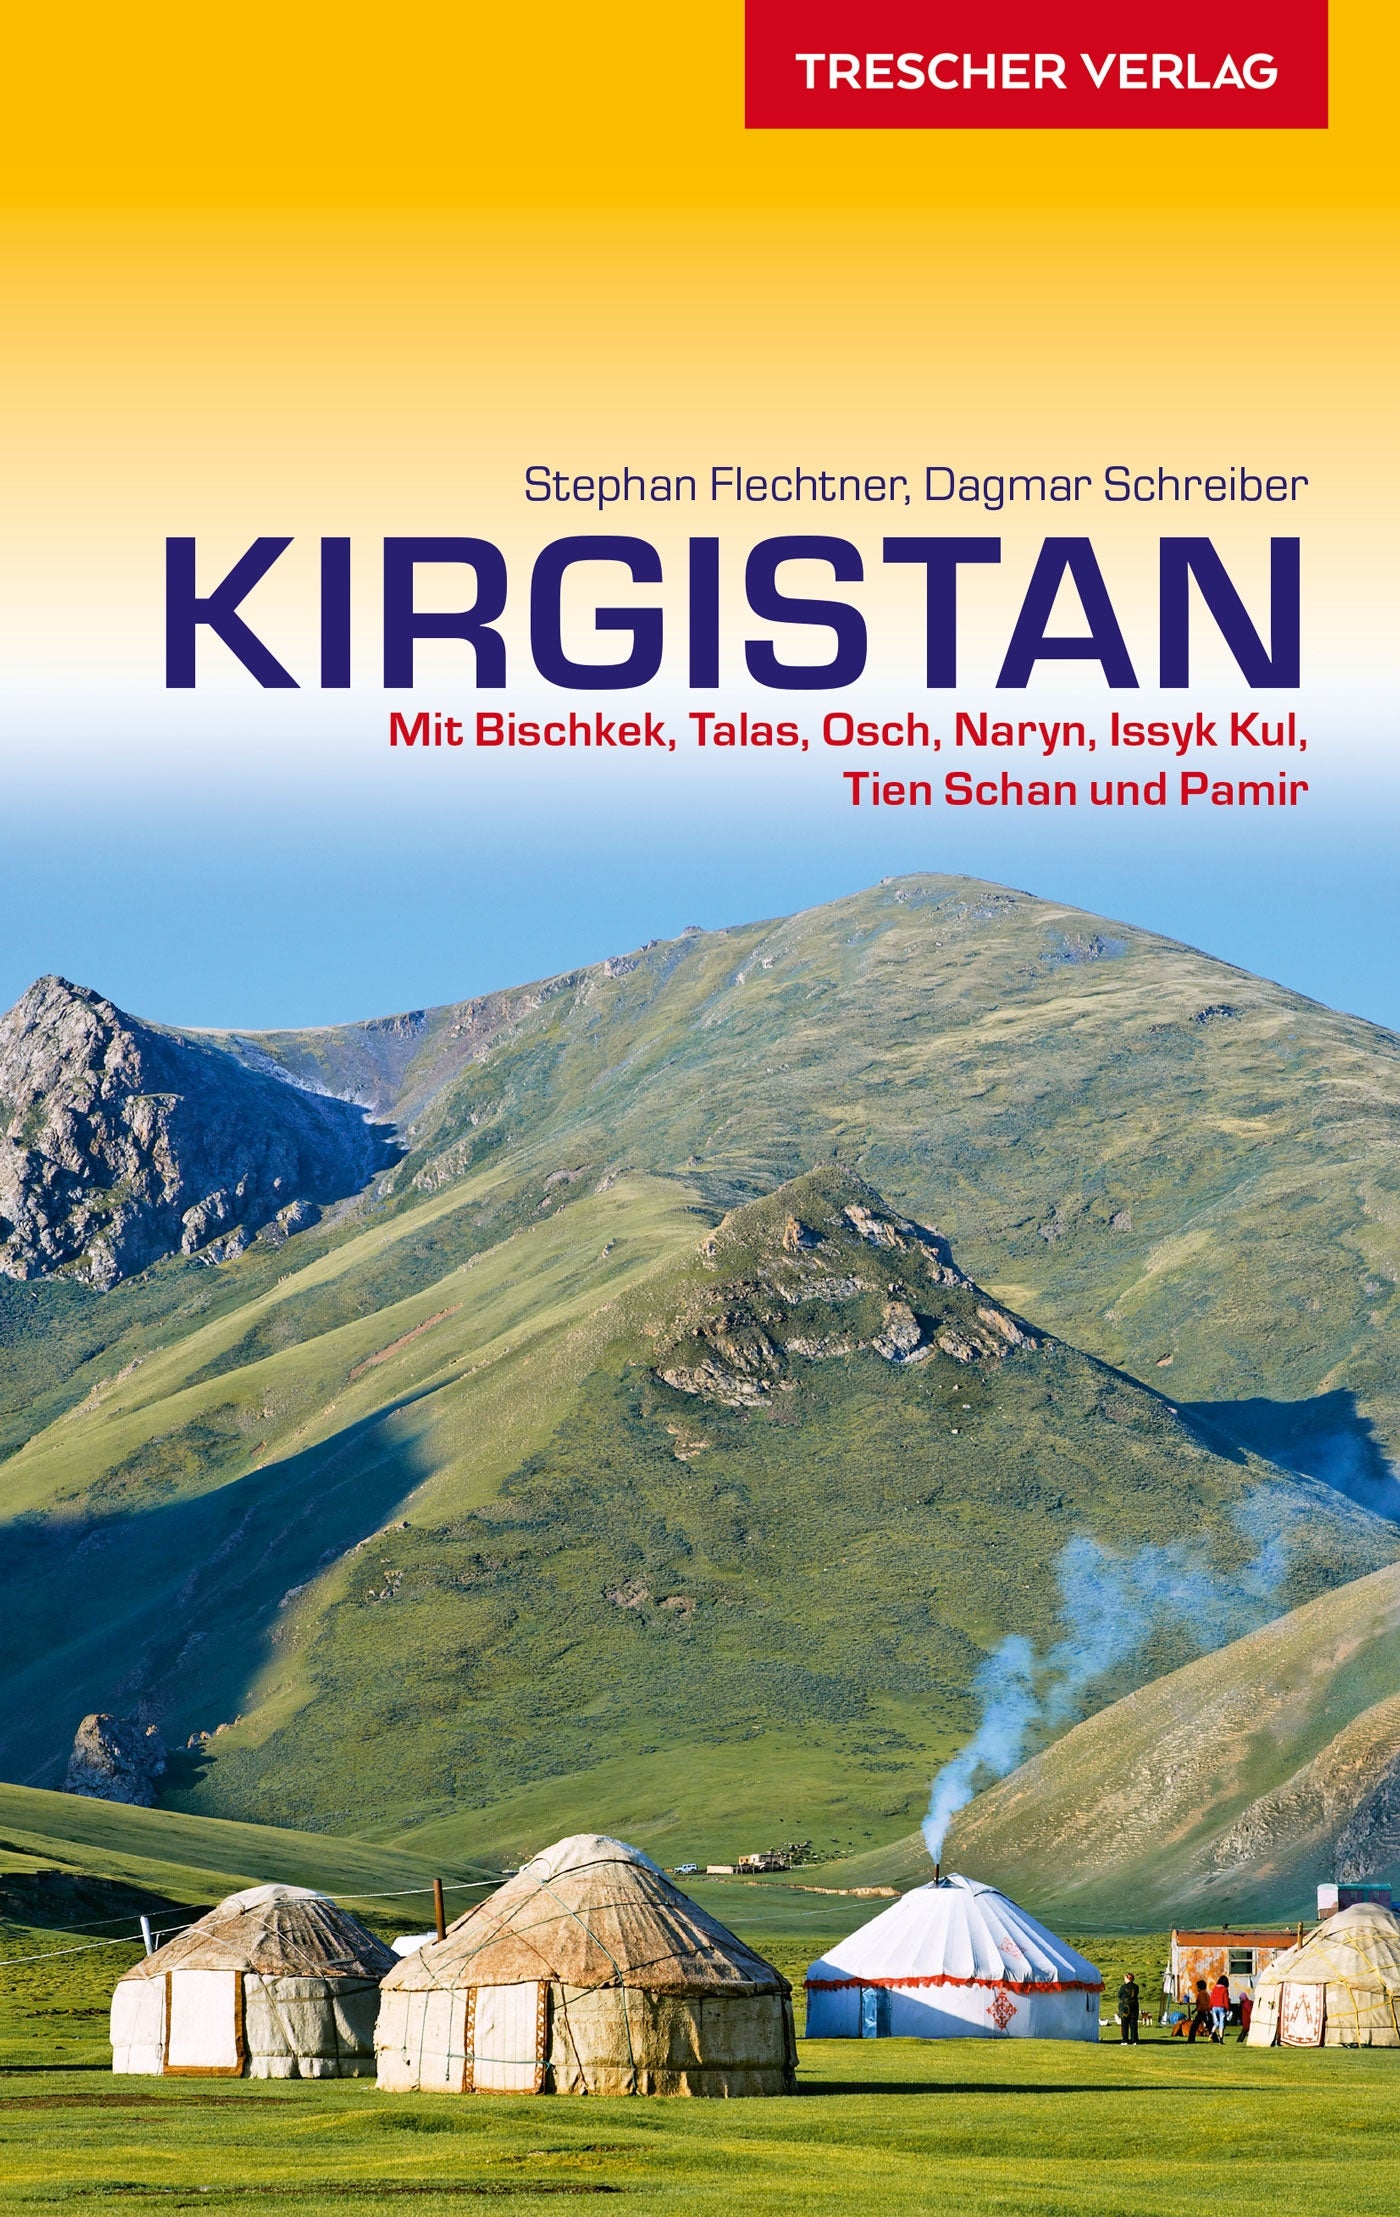 Kyrgyzstan travel guide 6.A 2019